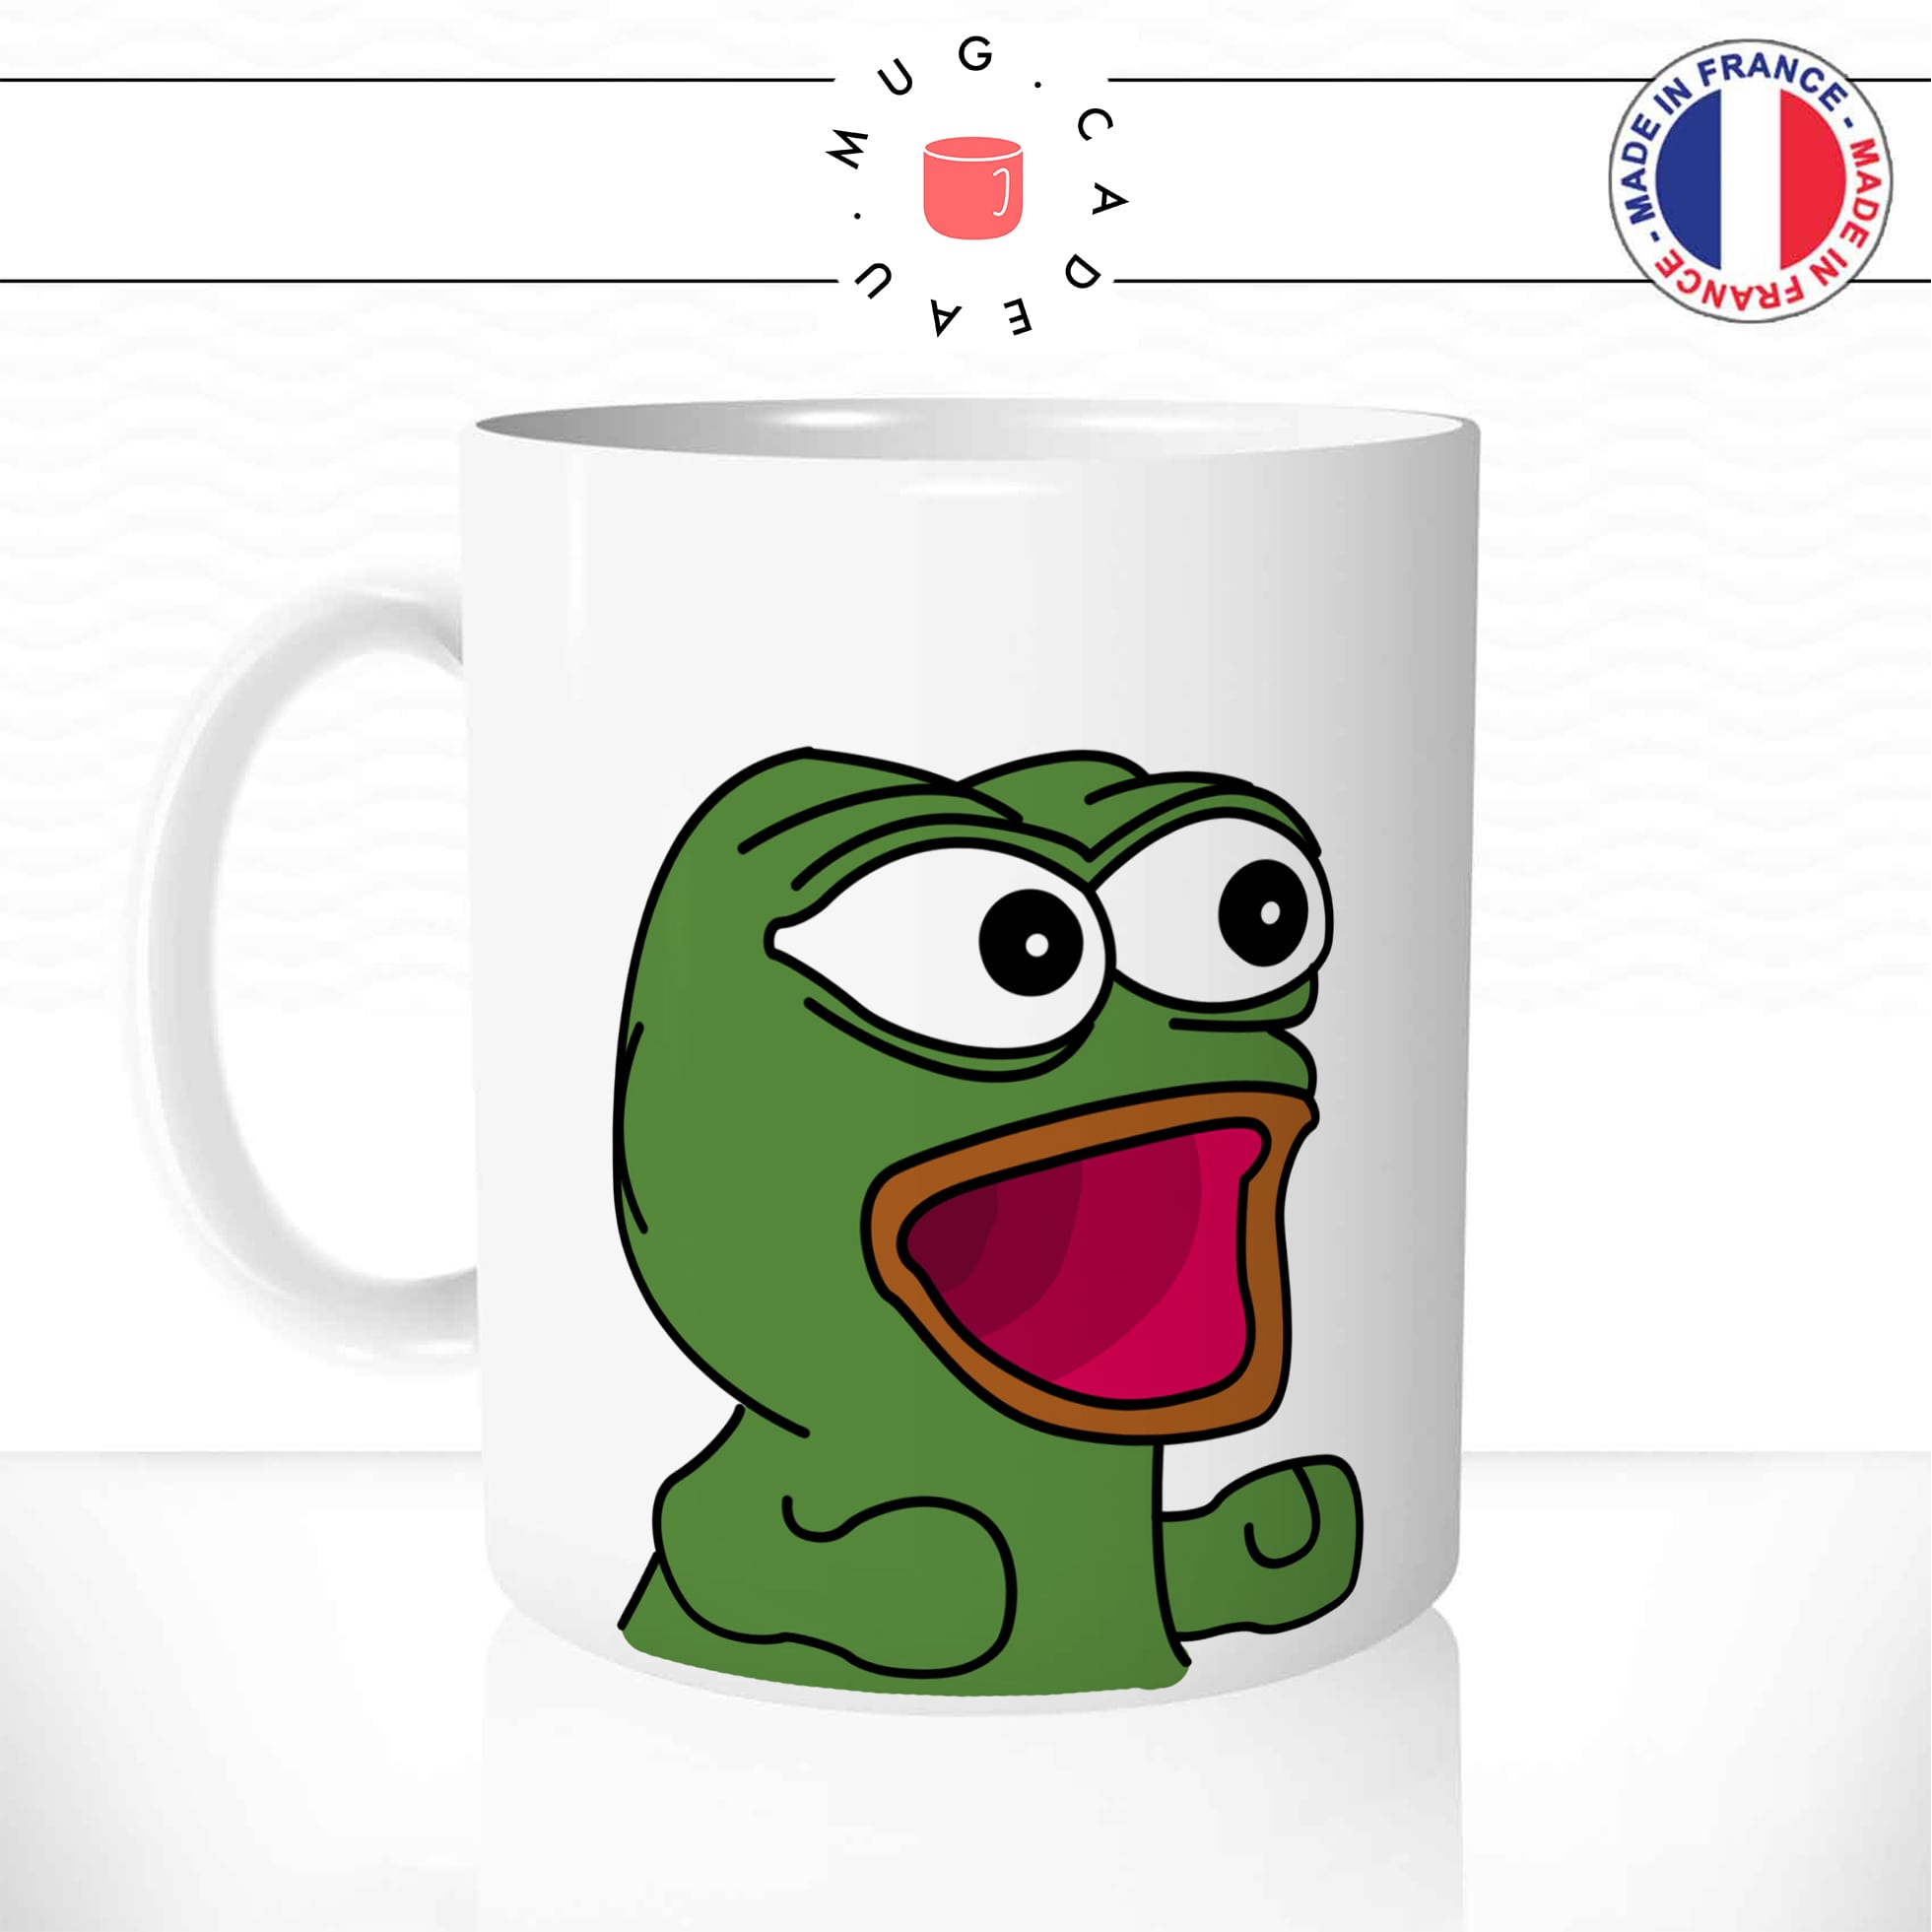 mug-tasse-meme-pepe-the-frog-content-bébé-petit-drole-geek-humour-fun-café-thé-idée-cadeau-originale-personnalisée-min